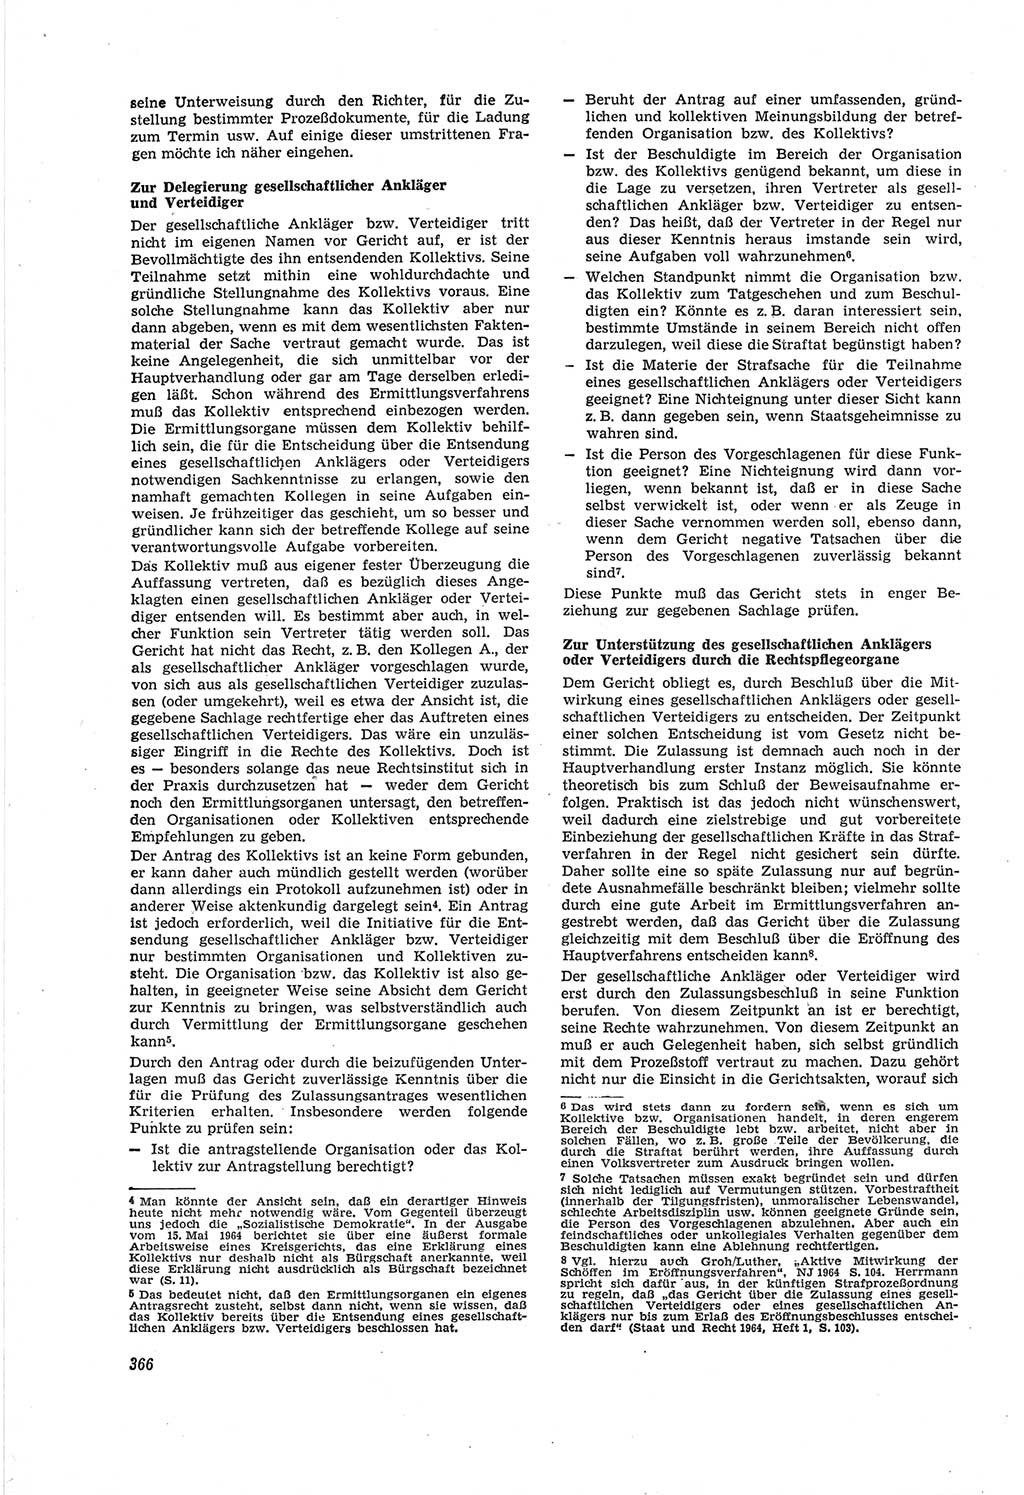 Neue Justiz (NJ), Zeitschrift für Recht und Rechtswissenschaft [Deutsche Demokratische Republik (DDR)], 18. Jahrgang 1964, Seite 366 (NJ DDR 1964, S. 366)